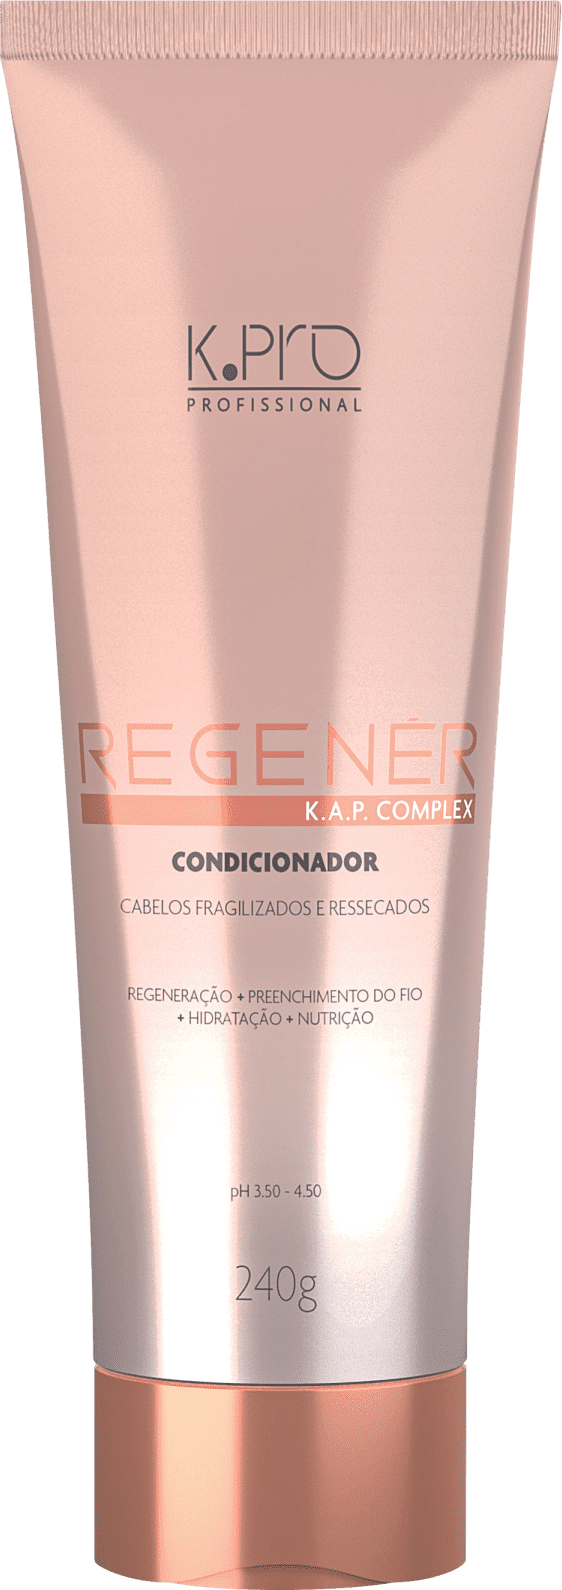 K.Pro Regenér - Condicionador -240g